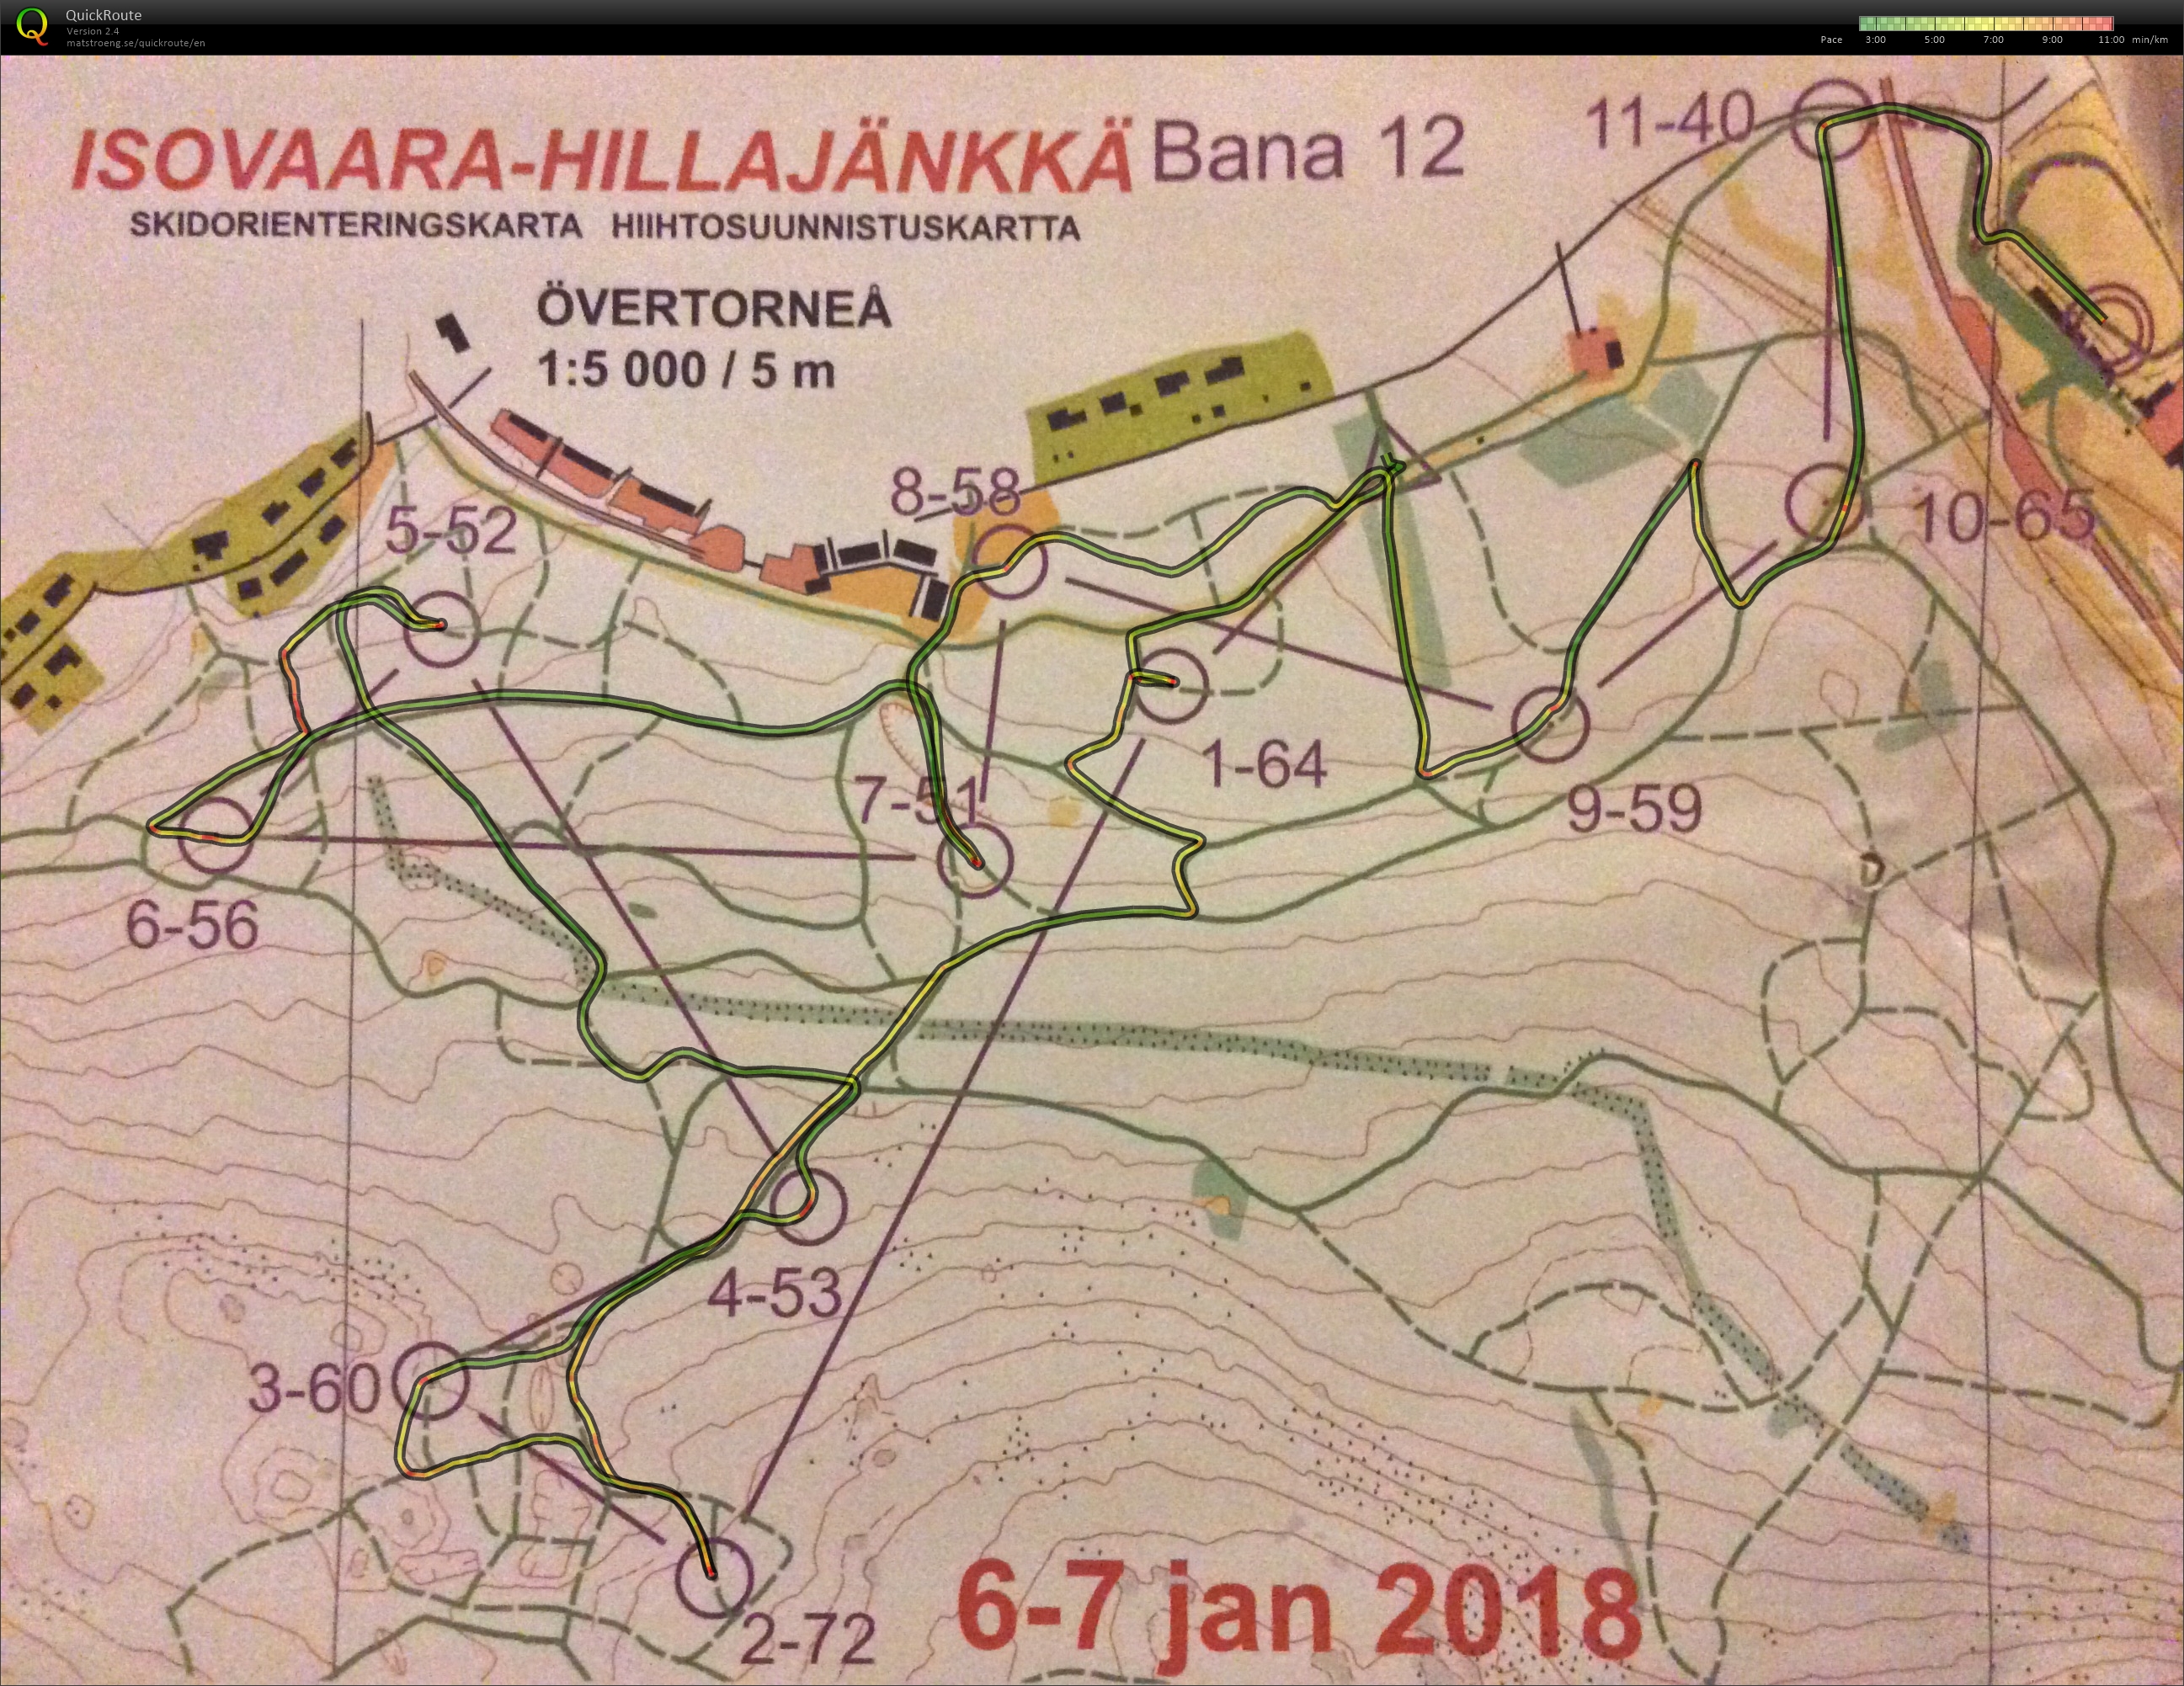 Skidorientering Övertorneå Sprint (07-01-2018)